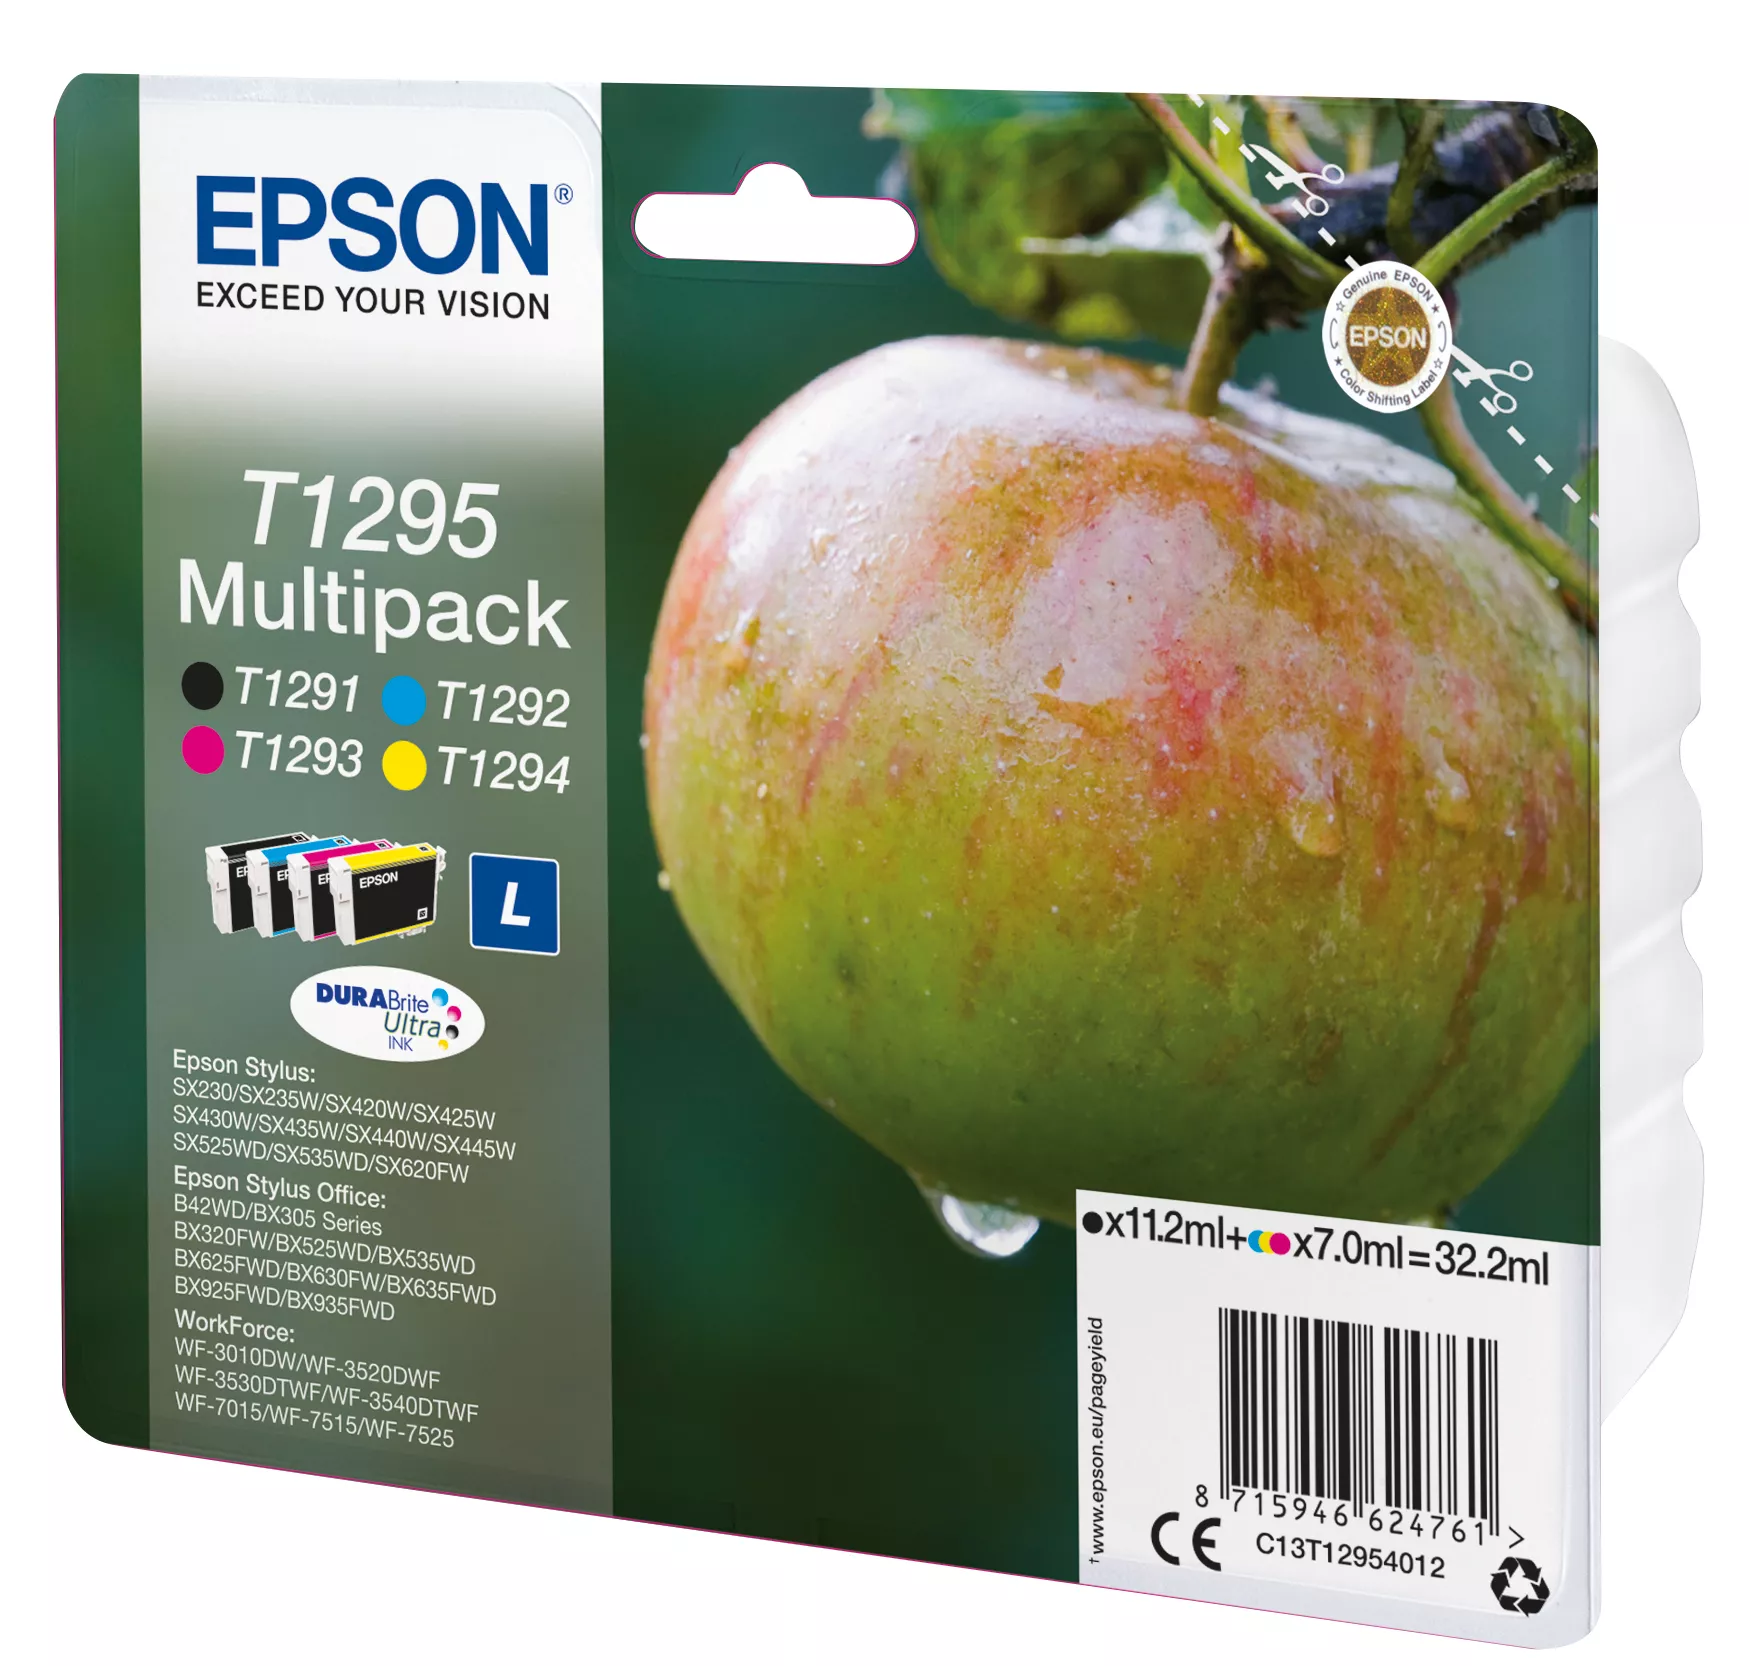 Vente EPSON T1295 cartouche d encre noir et tricolore Epson au meilleur prix - visuel 2